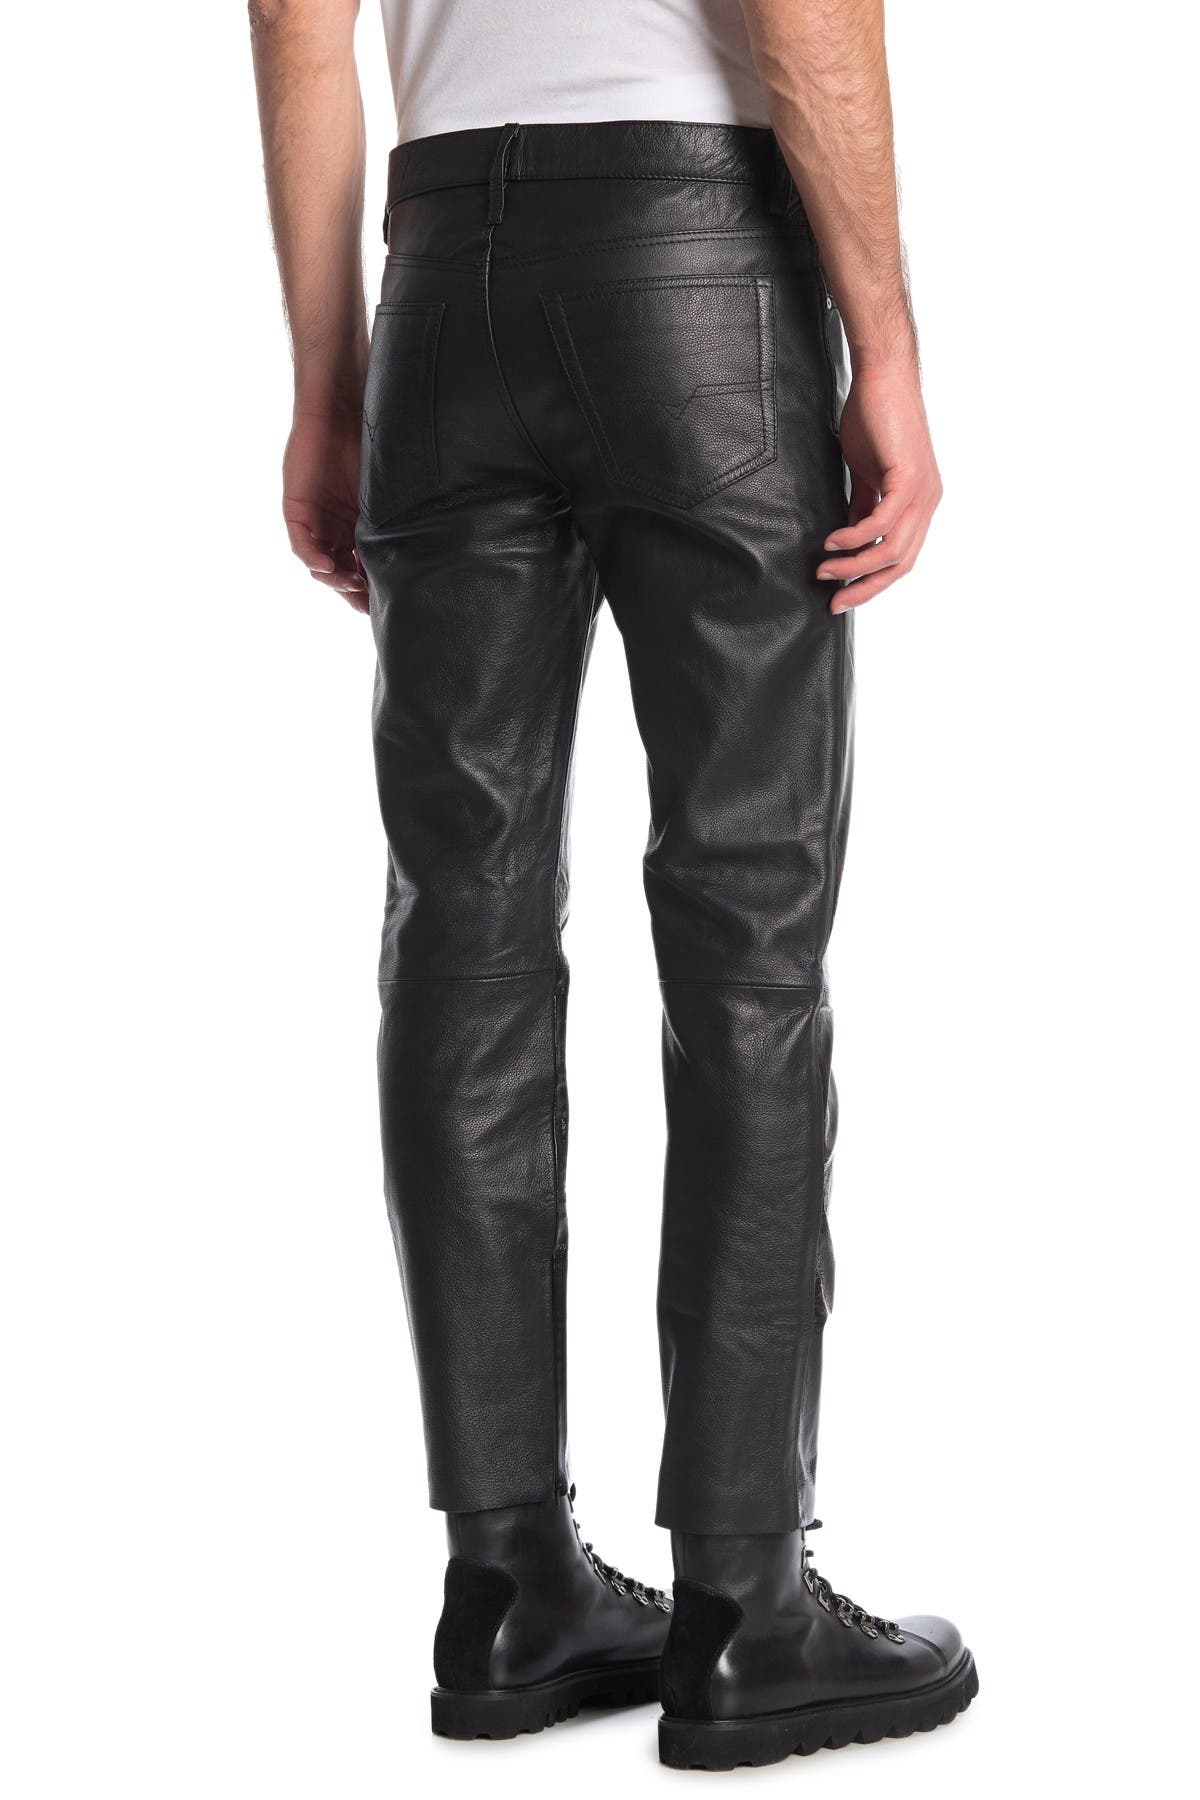 diesel leather pants